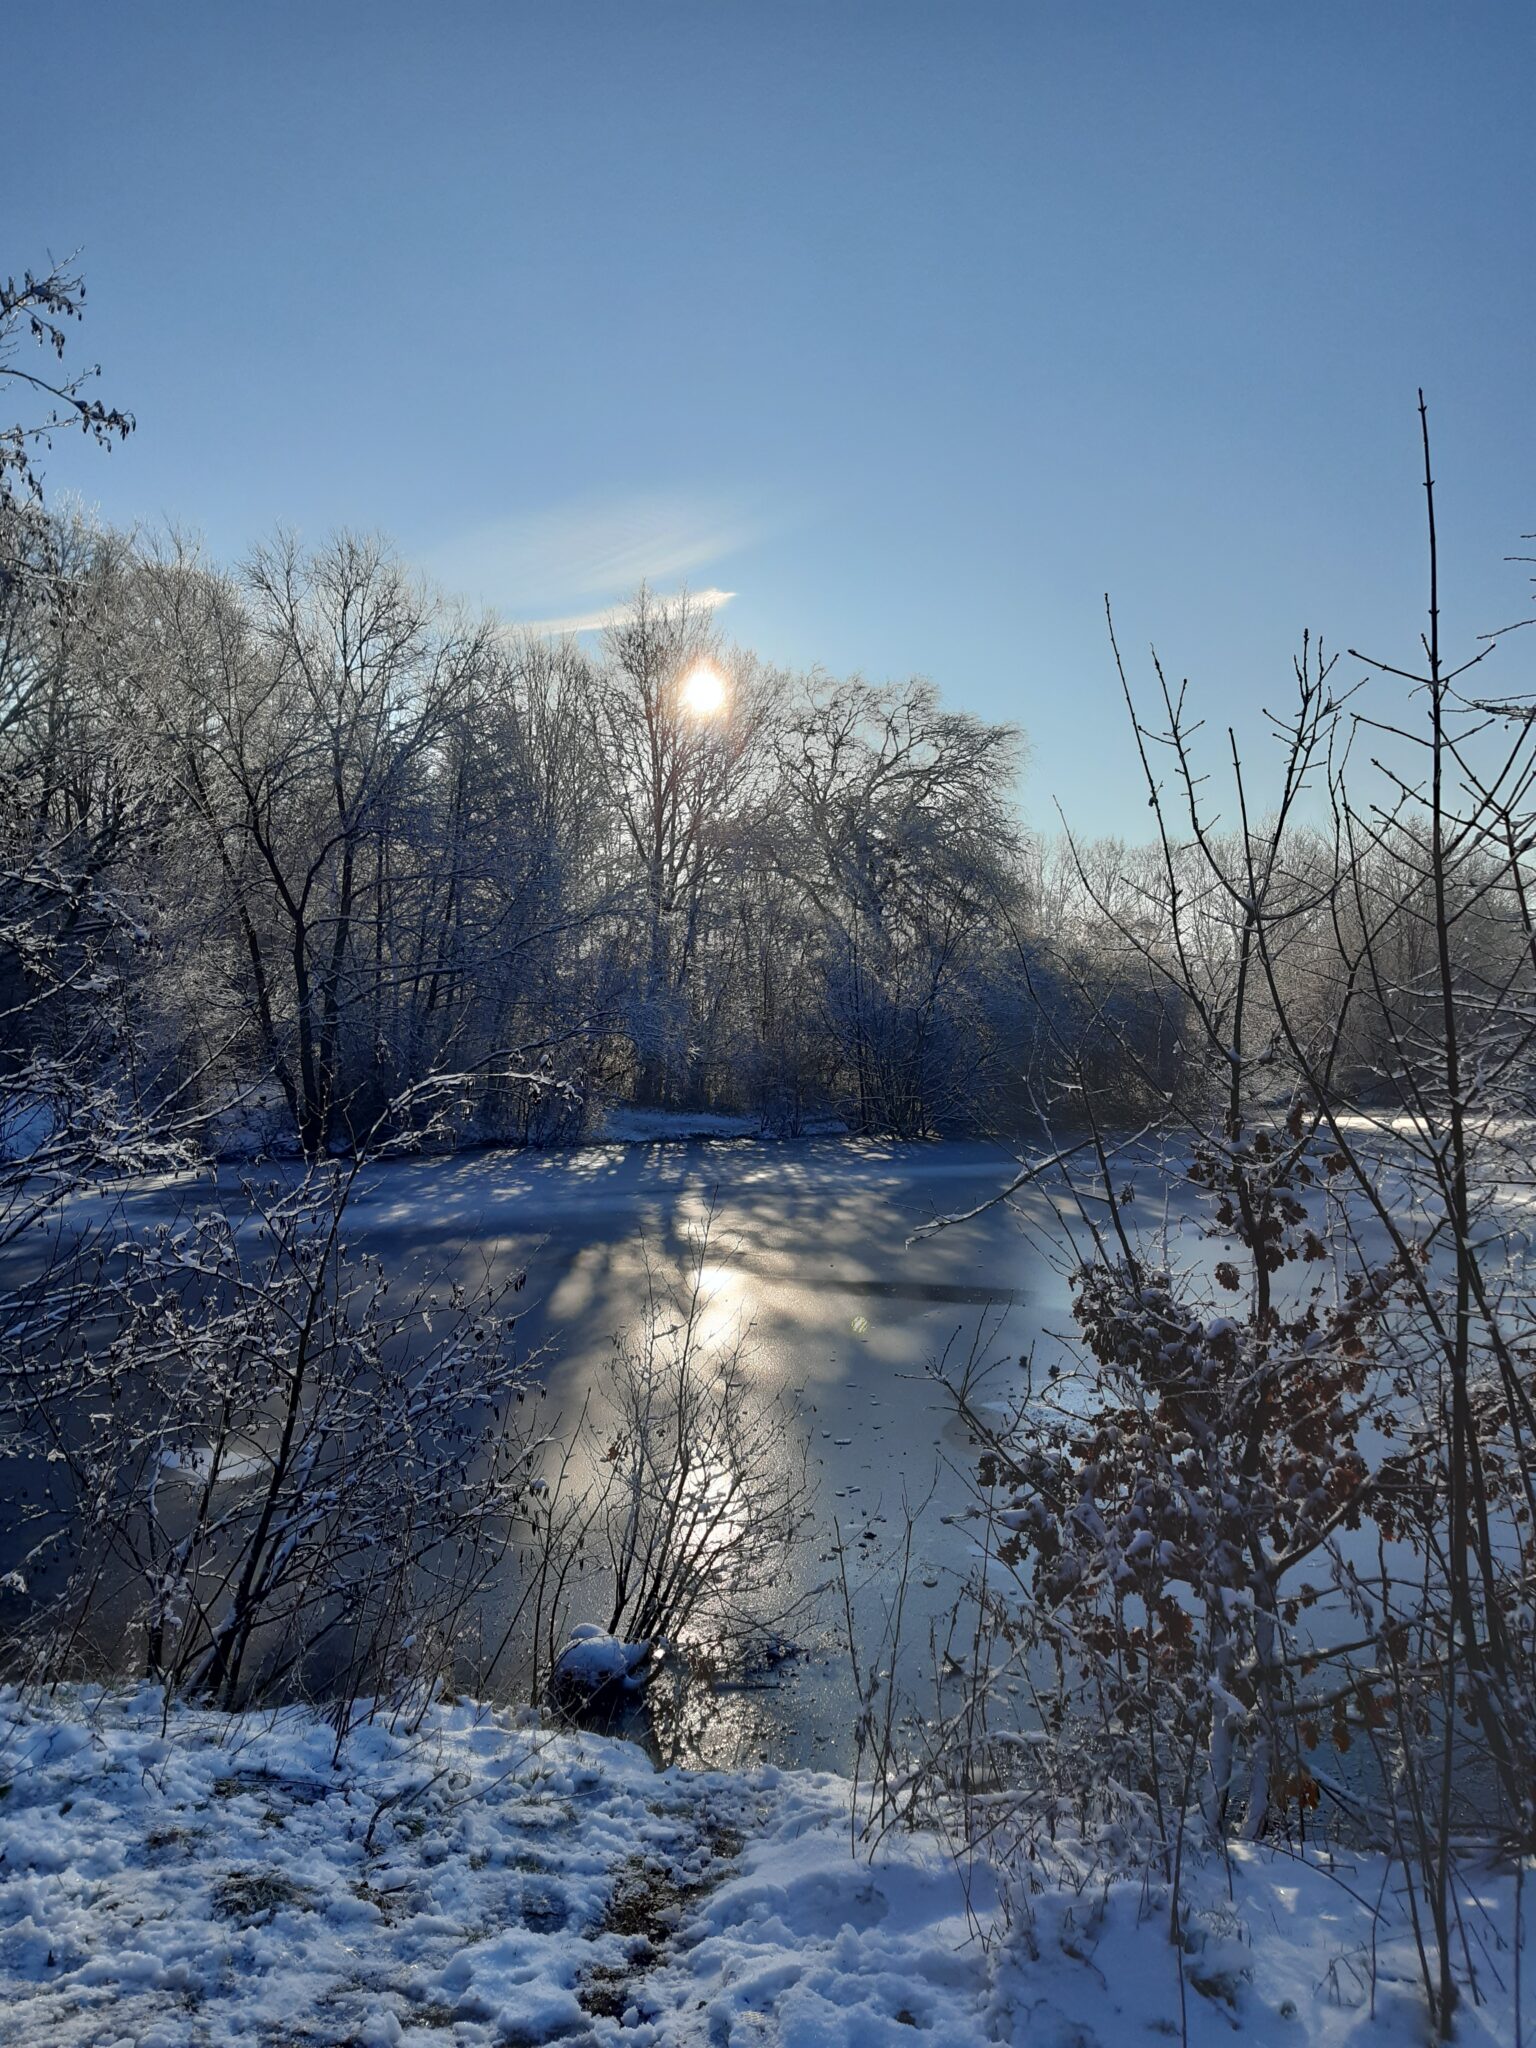 Foto eines Oldenburger Sees im Schnee - die Sonne scheint durch die Bäume